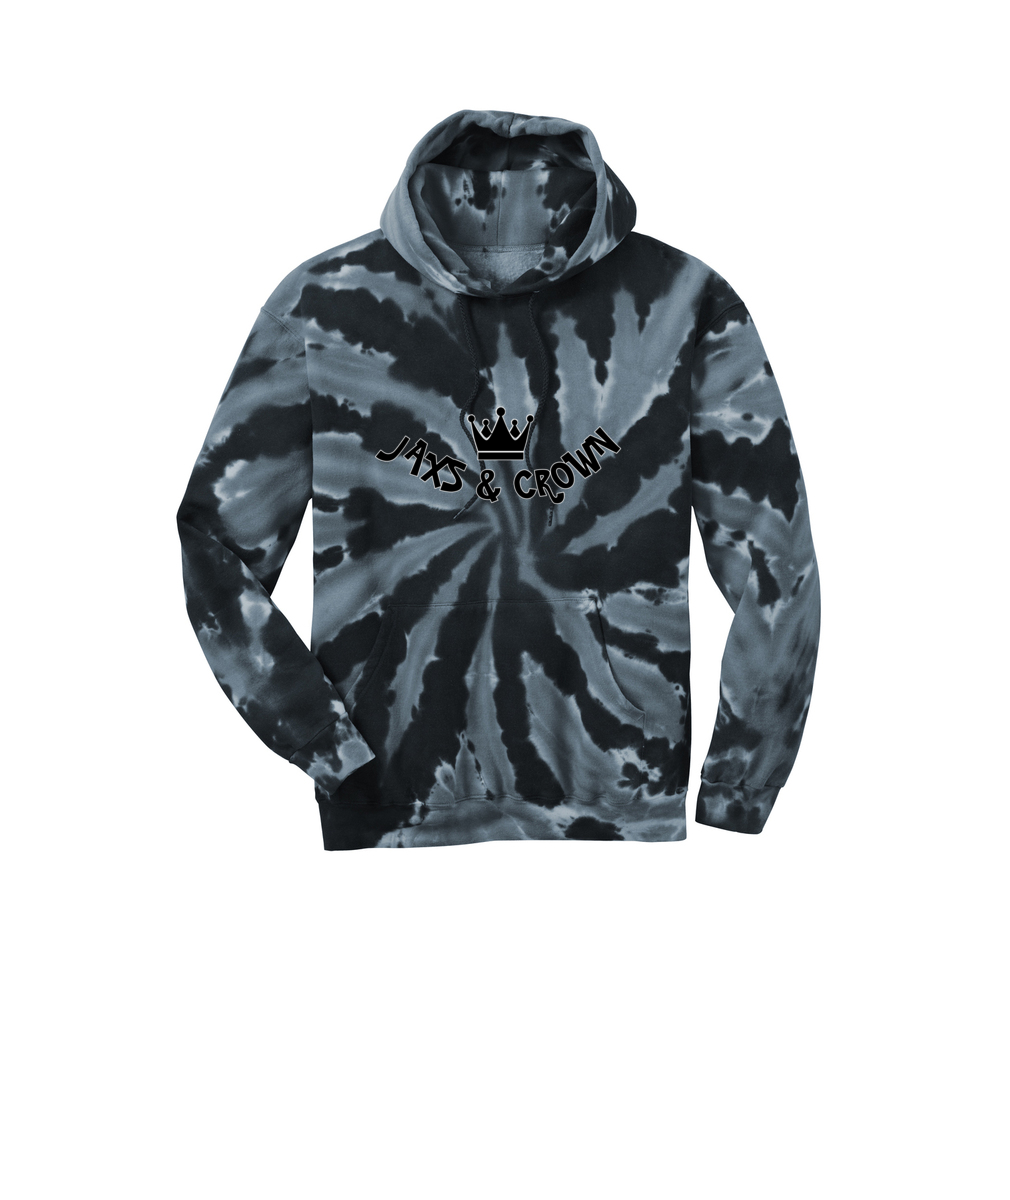 Jaxs n crown print Port & Company® Tie-Dye Pullover Hooded Sweatshirt